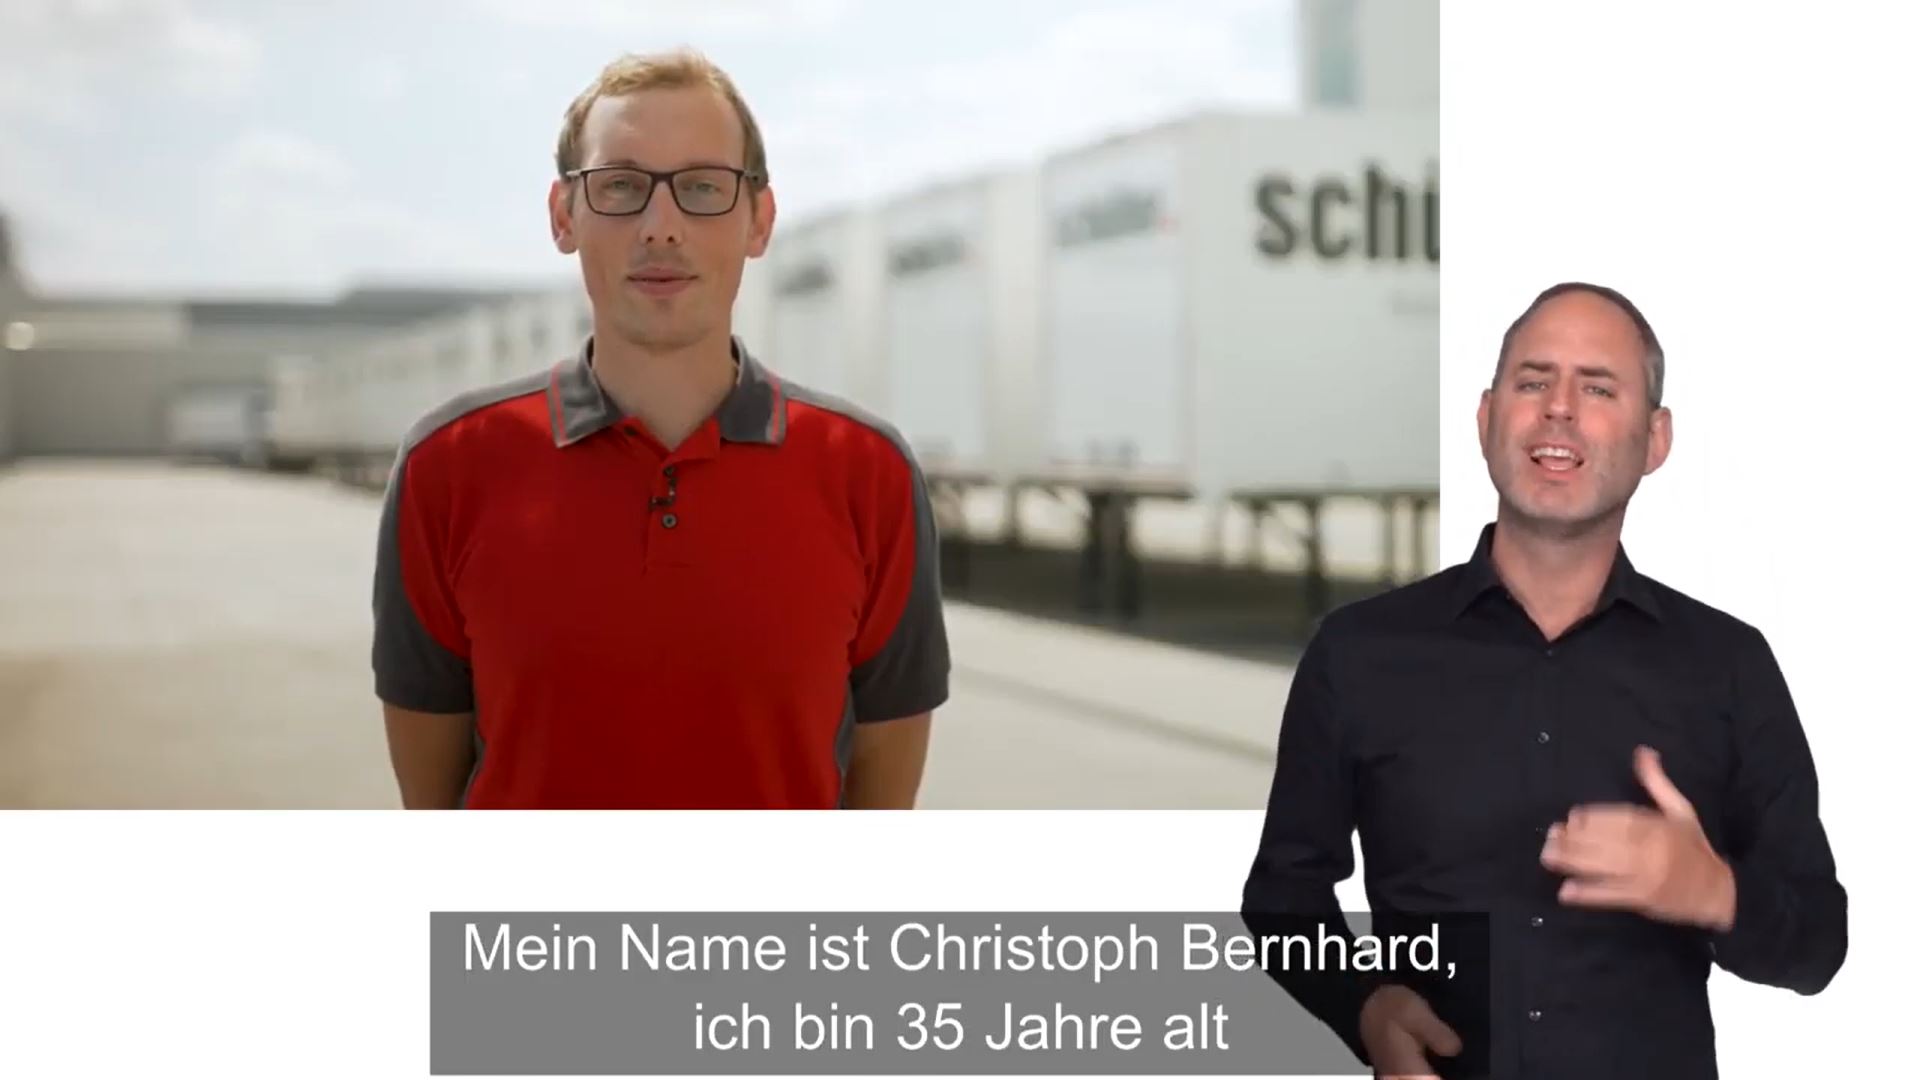 In diesem Video berichtet Testimonial Christoph Bernhard über seine berufliche Weiterbildung. 